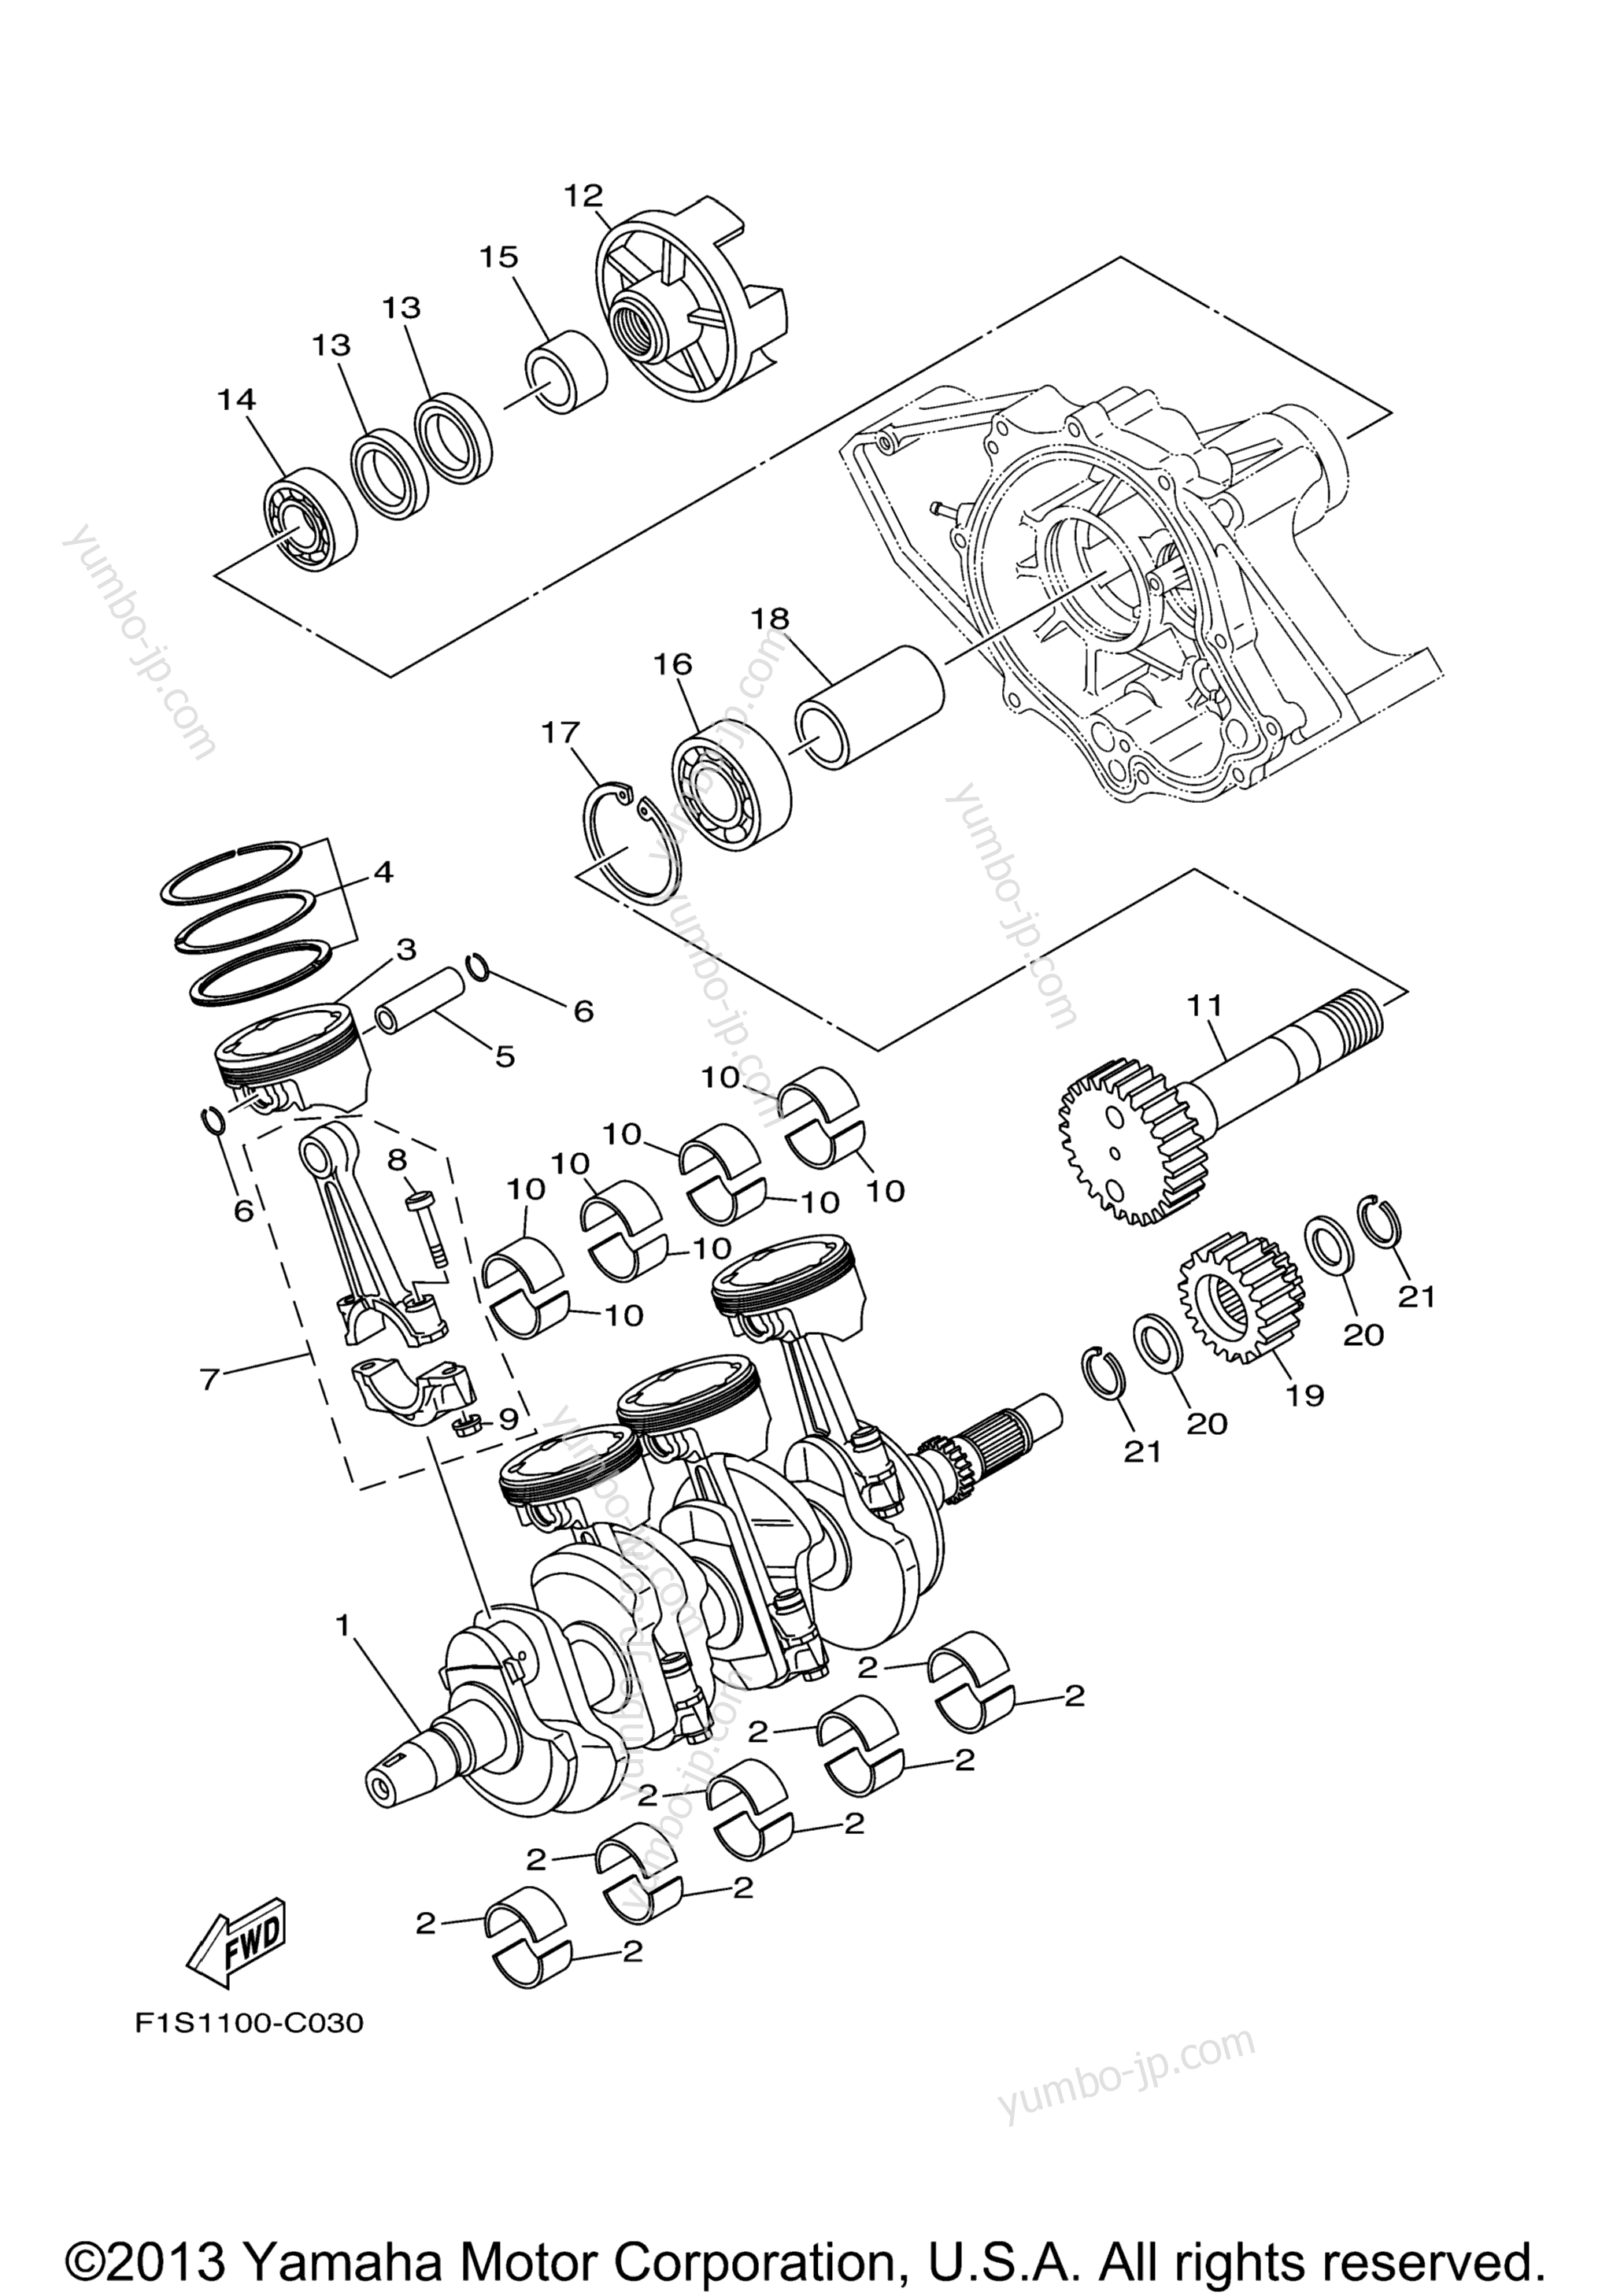 Crankshaft & Piston для катеров YAMAHA 232 LIMITED (SXT1100HLH) CA 2009 г.